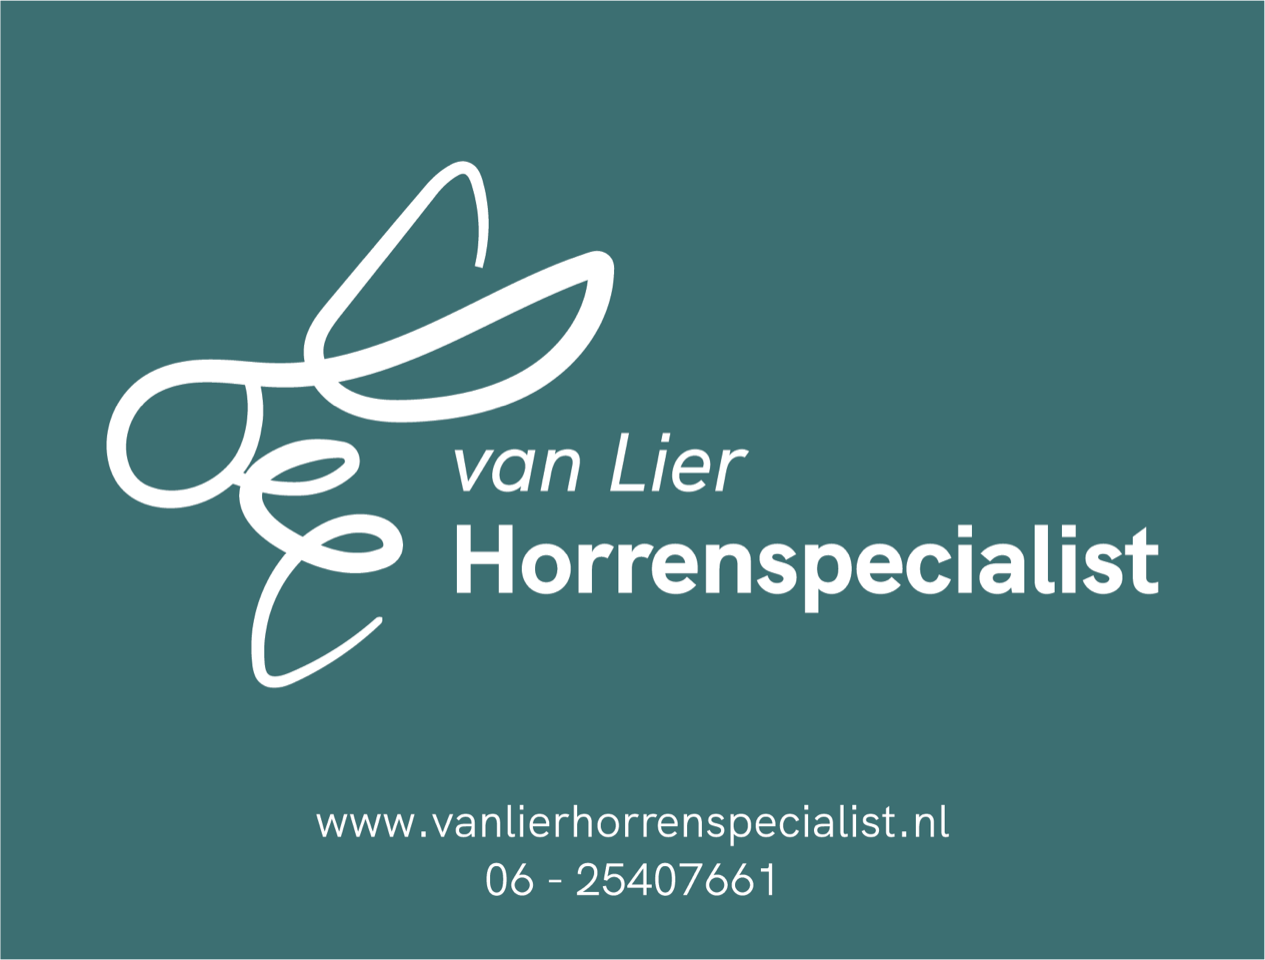 Van Lier Horrenspecialist